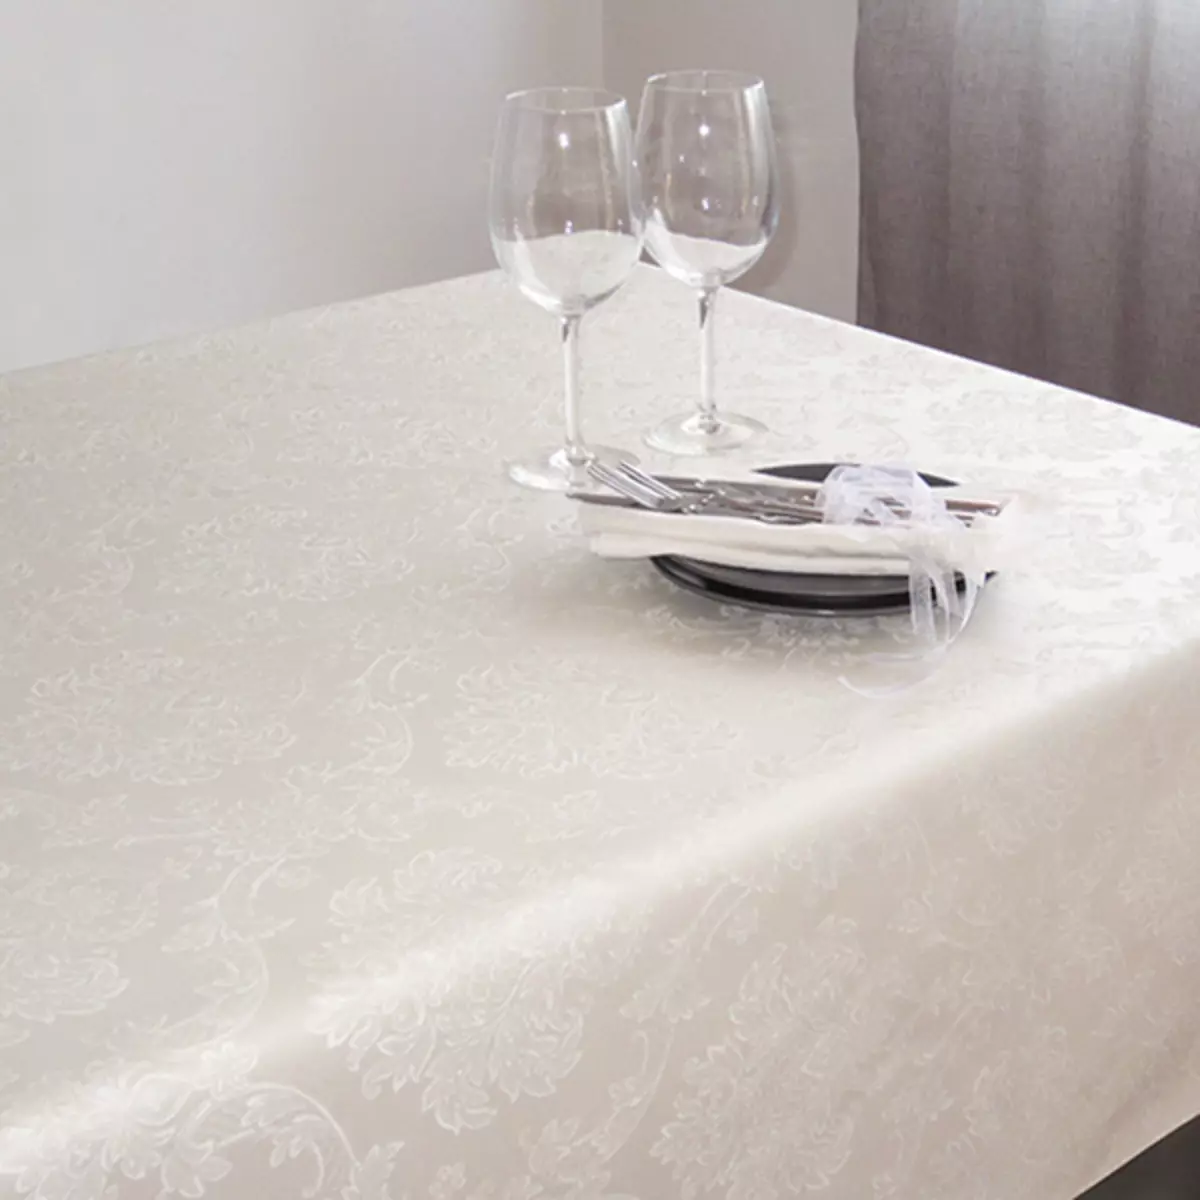 Kleenka na mesa (51 fotos): lindas toalhas de mesa adesivas brancas em um rolo, sob a árvore e outros. O que fazer se a nova cola cheira muito? 21613_33